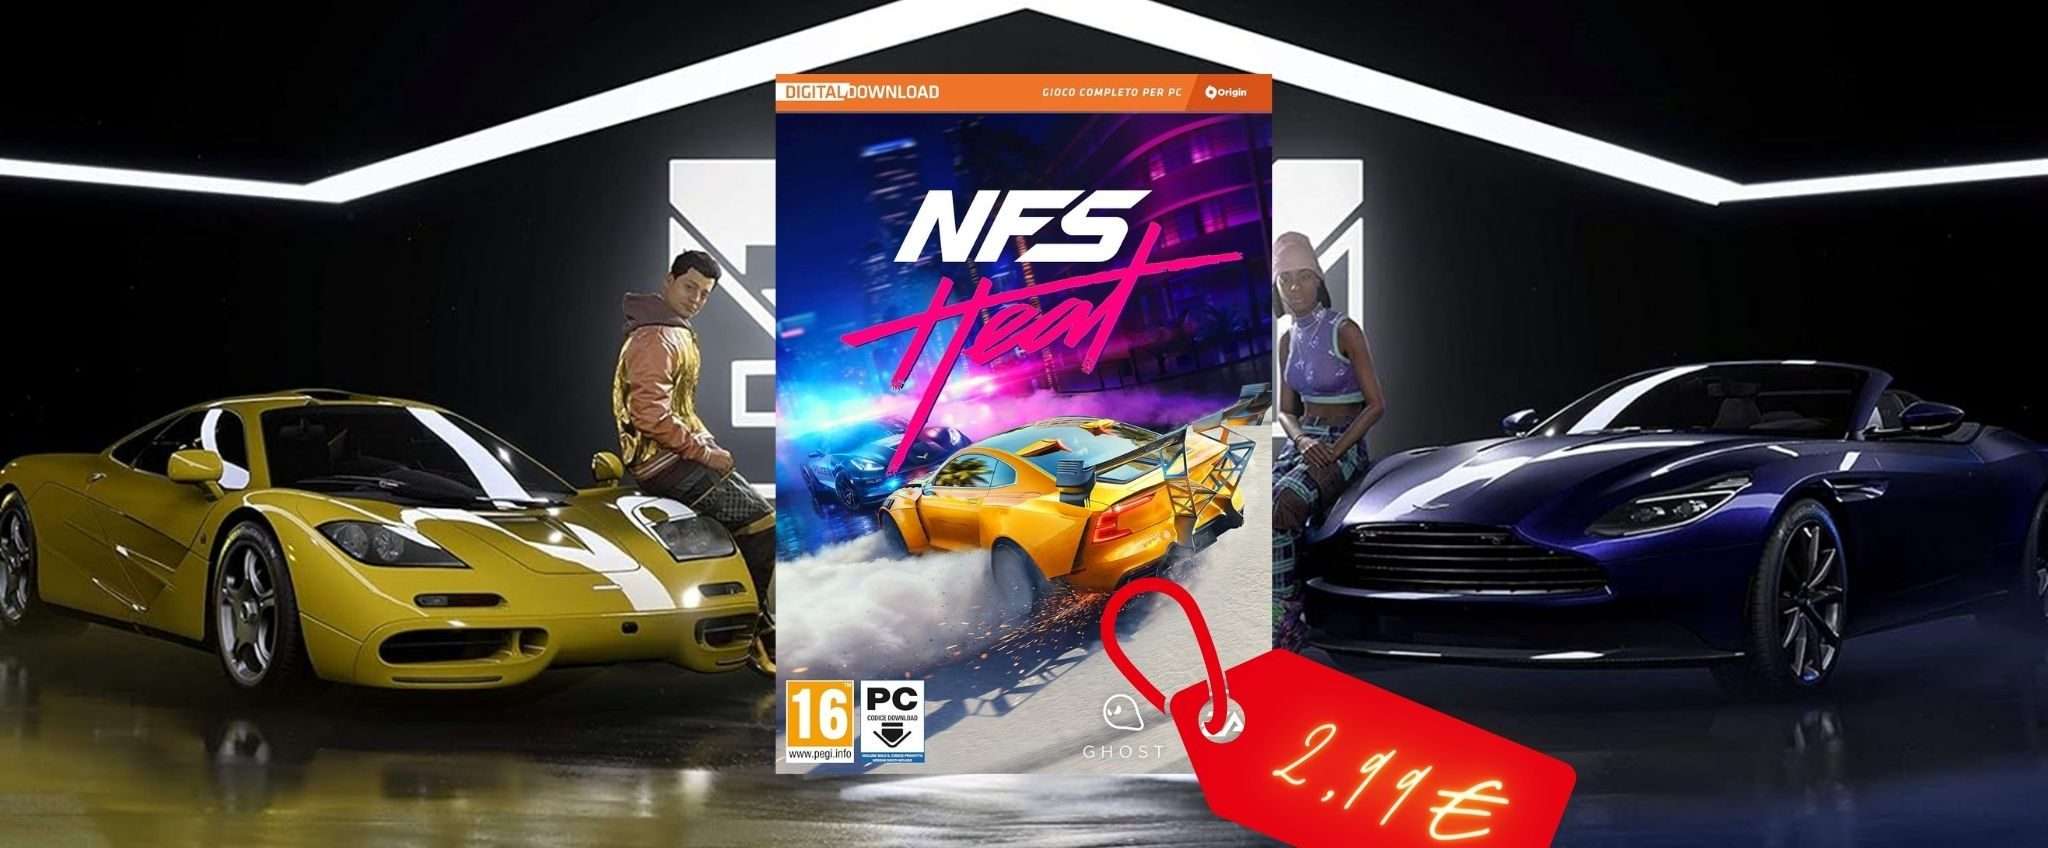 Need for Speed Heat per PC: ERRORE DI PREZZO? Solo 2,99€ su Amazon!